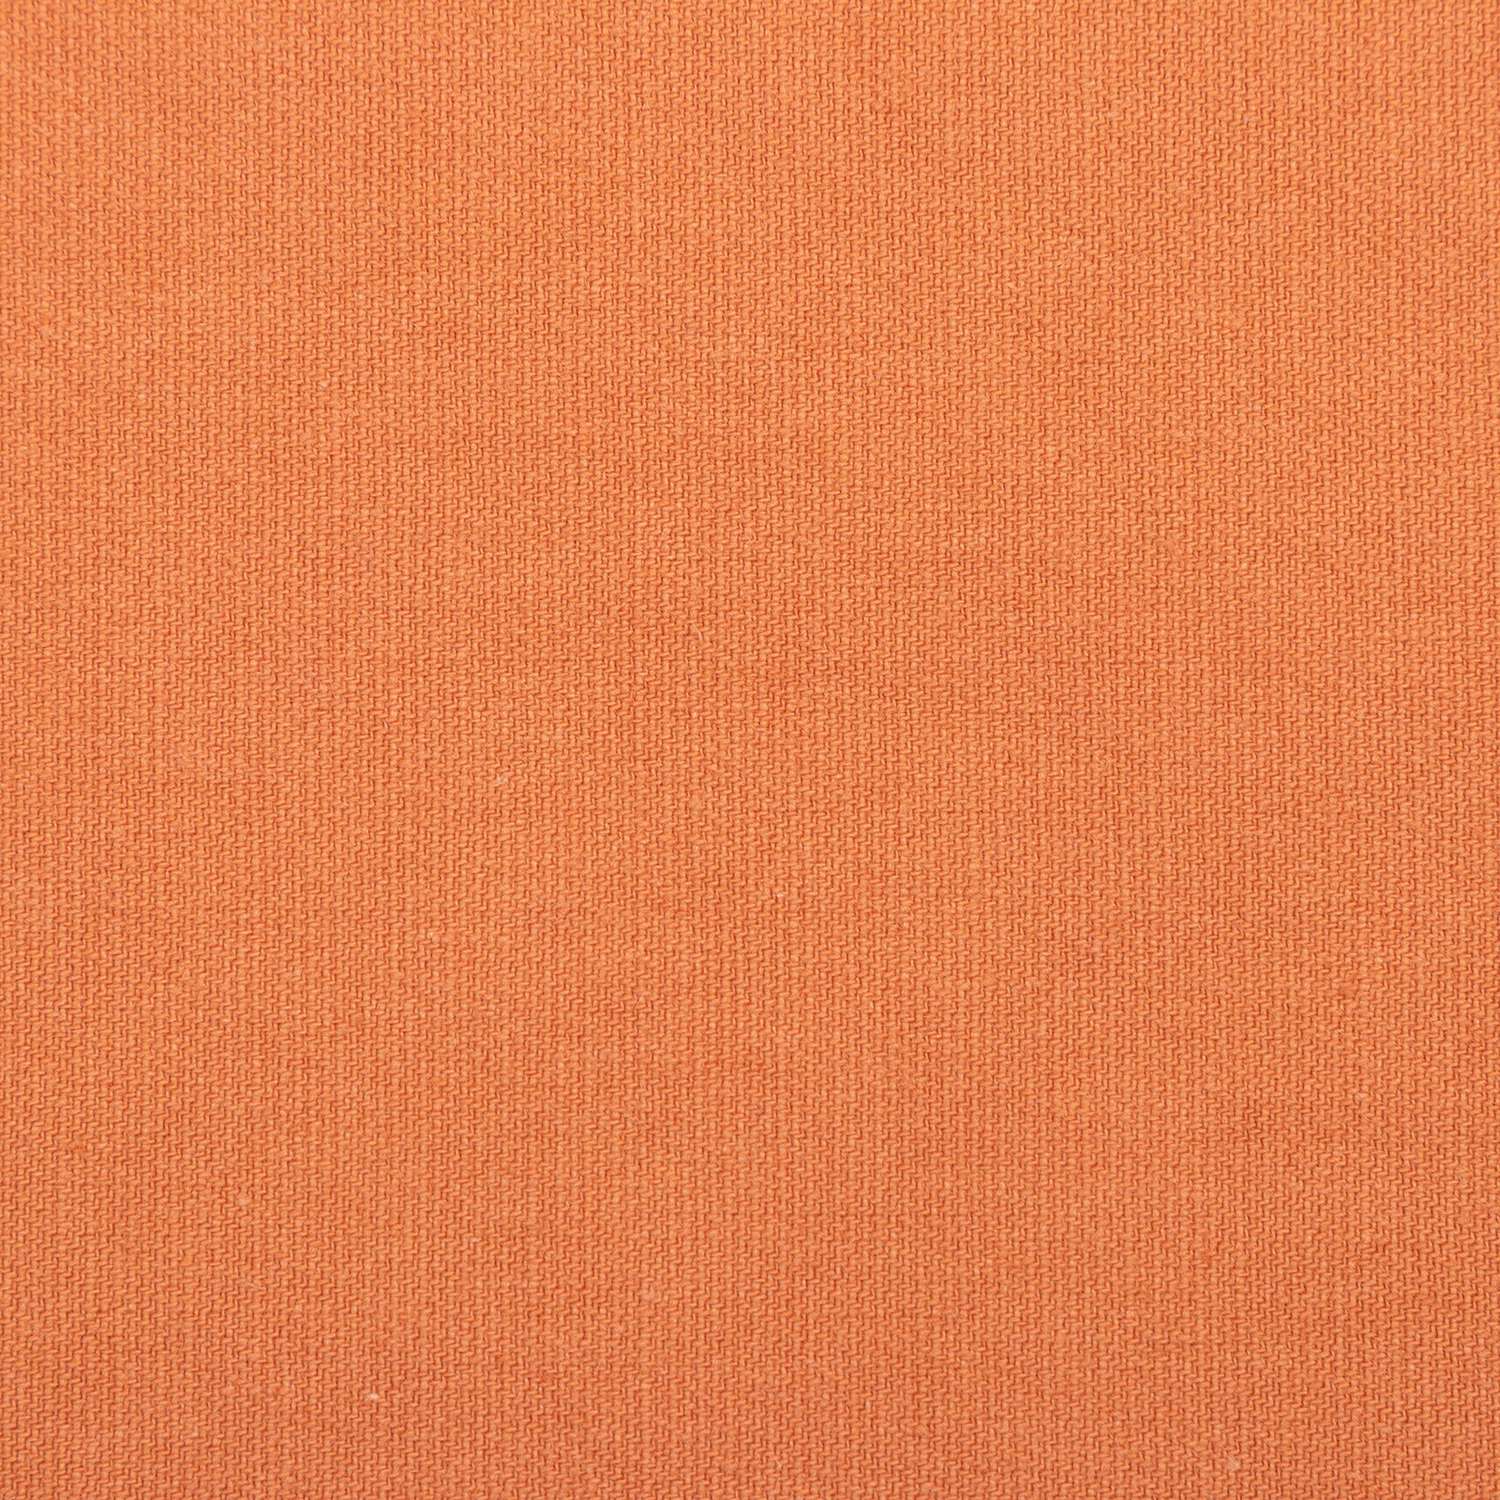 Скатерть Этель оранжевая 150х220 см саржа - фото 4